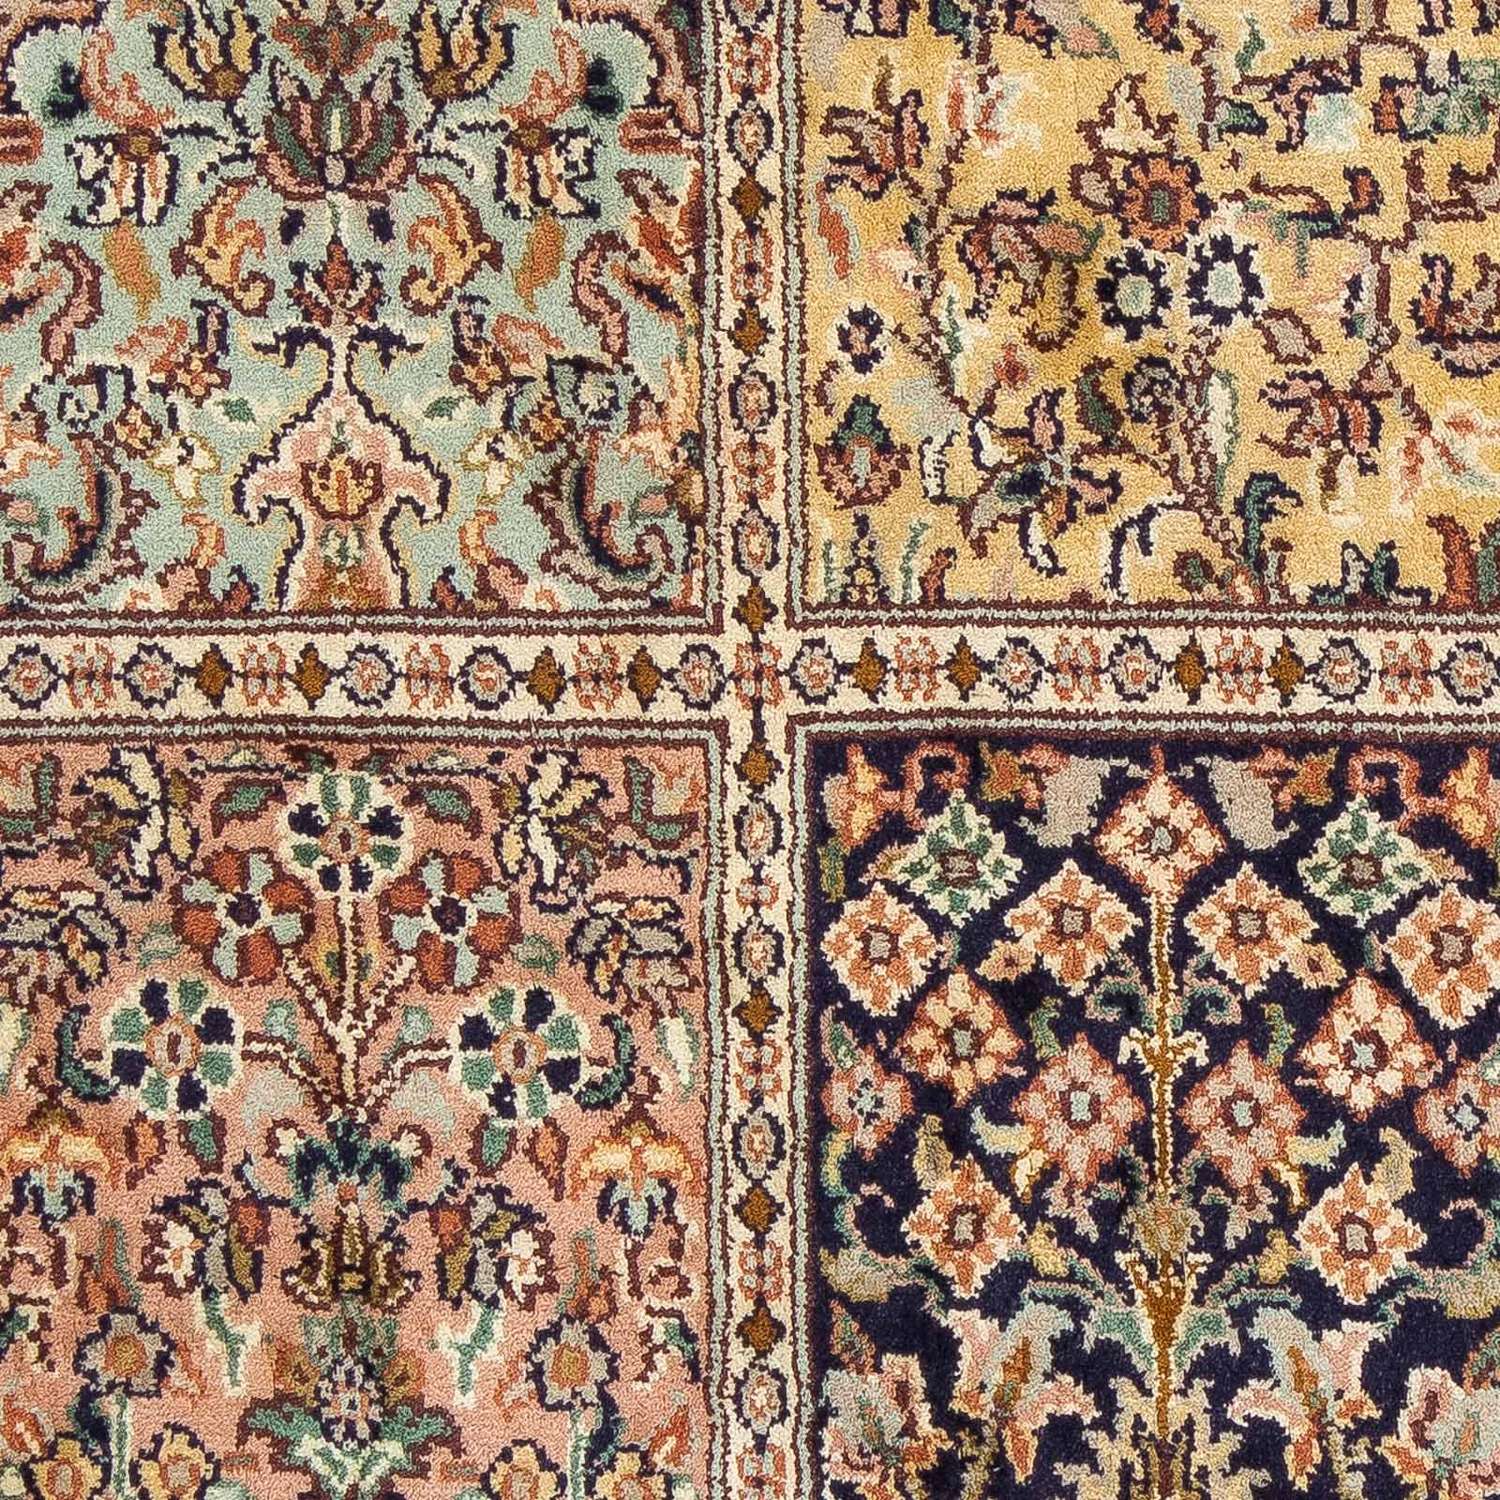 Tapis persan - Classique - 95 x 64 cm - multicolore